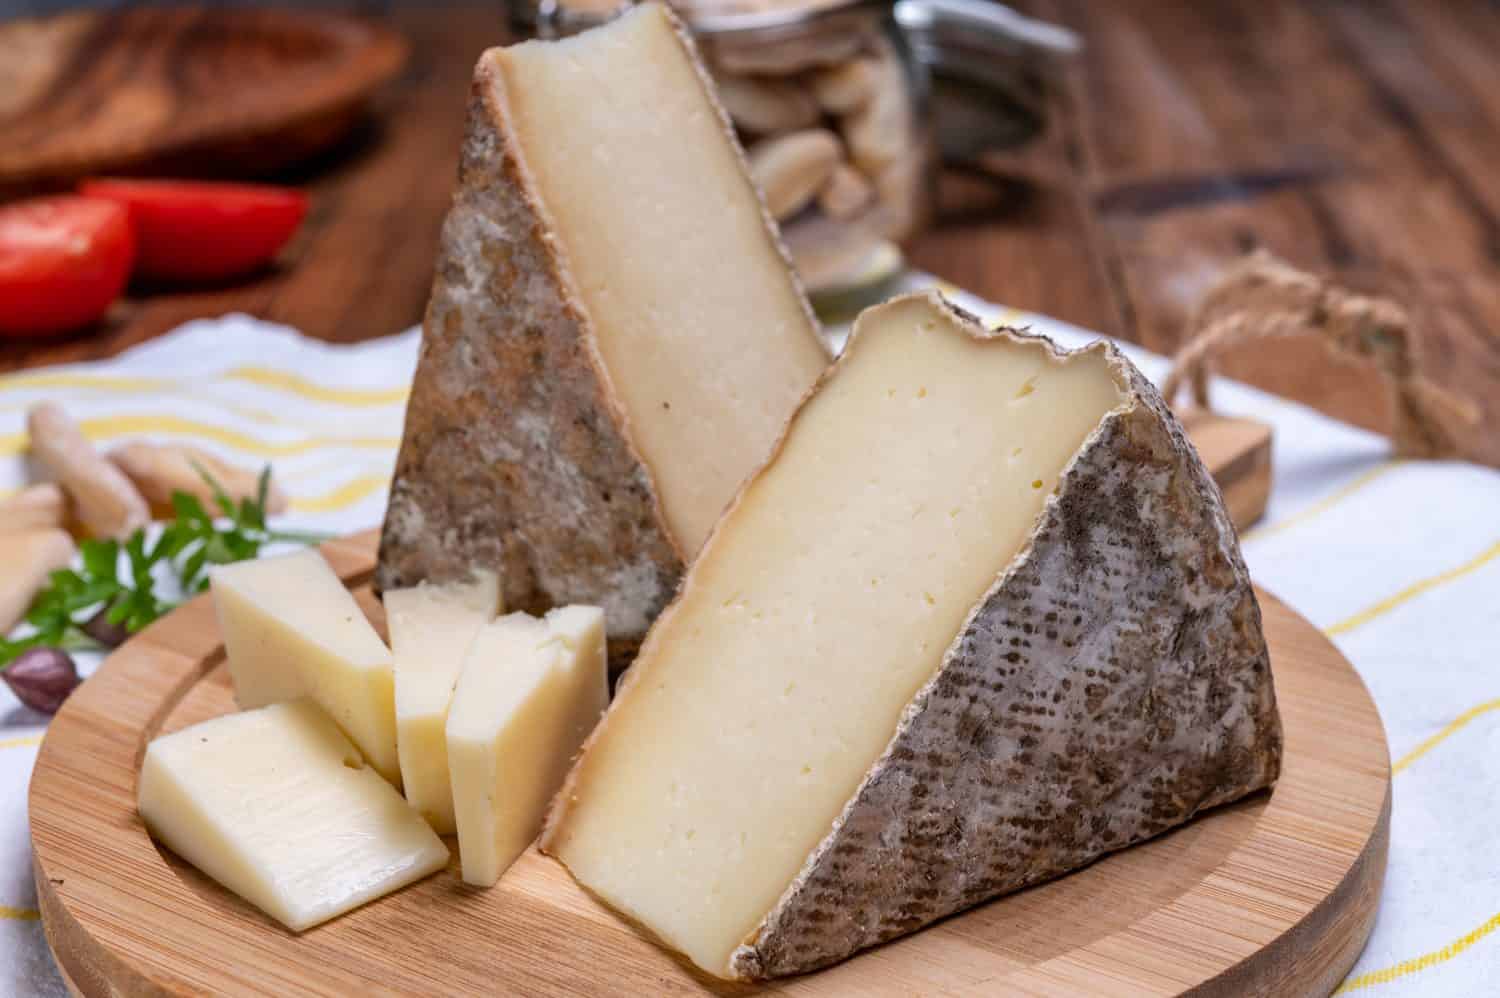 Pezzi di formaggio tomme de montagne o tomme de savoie a base di latte vaccino nelle Alpi francesi.